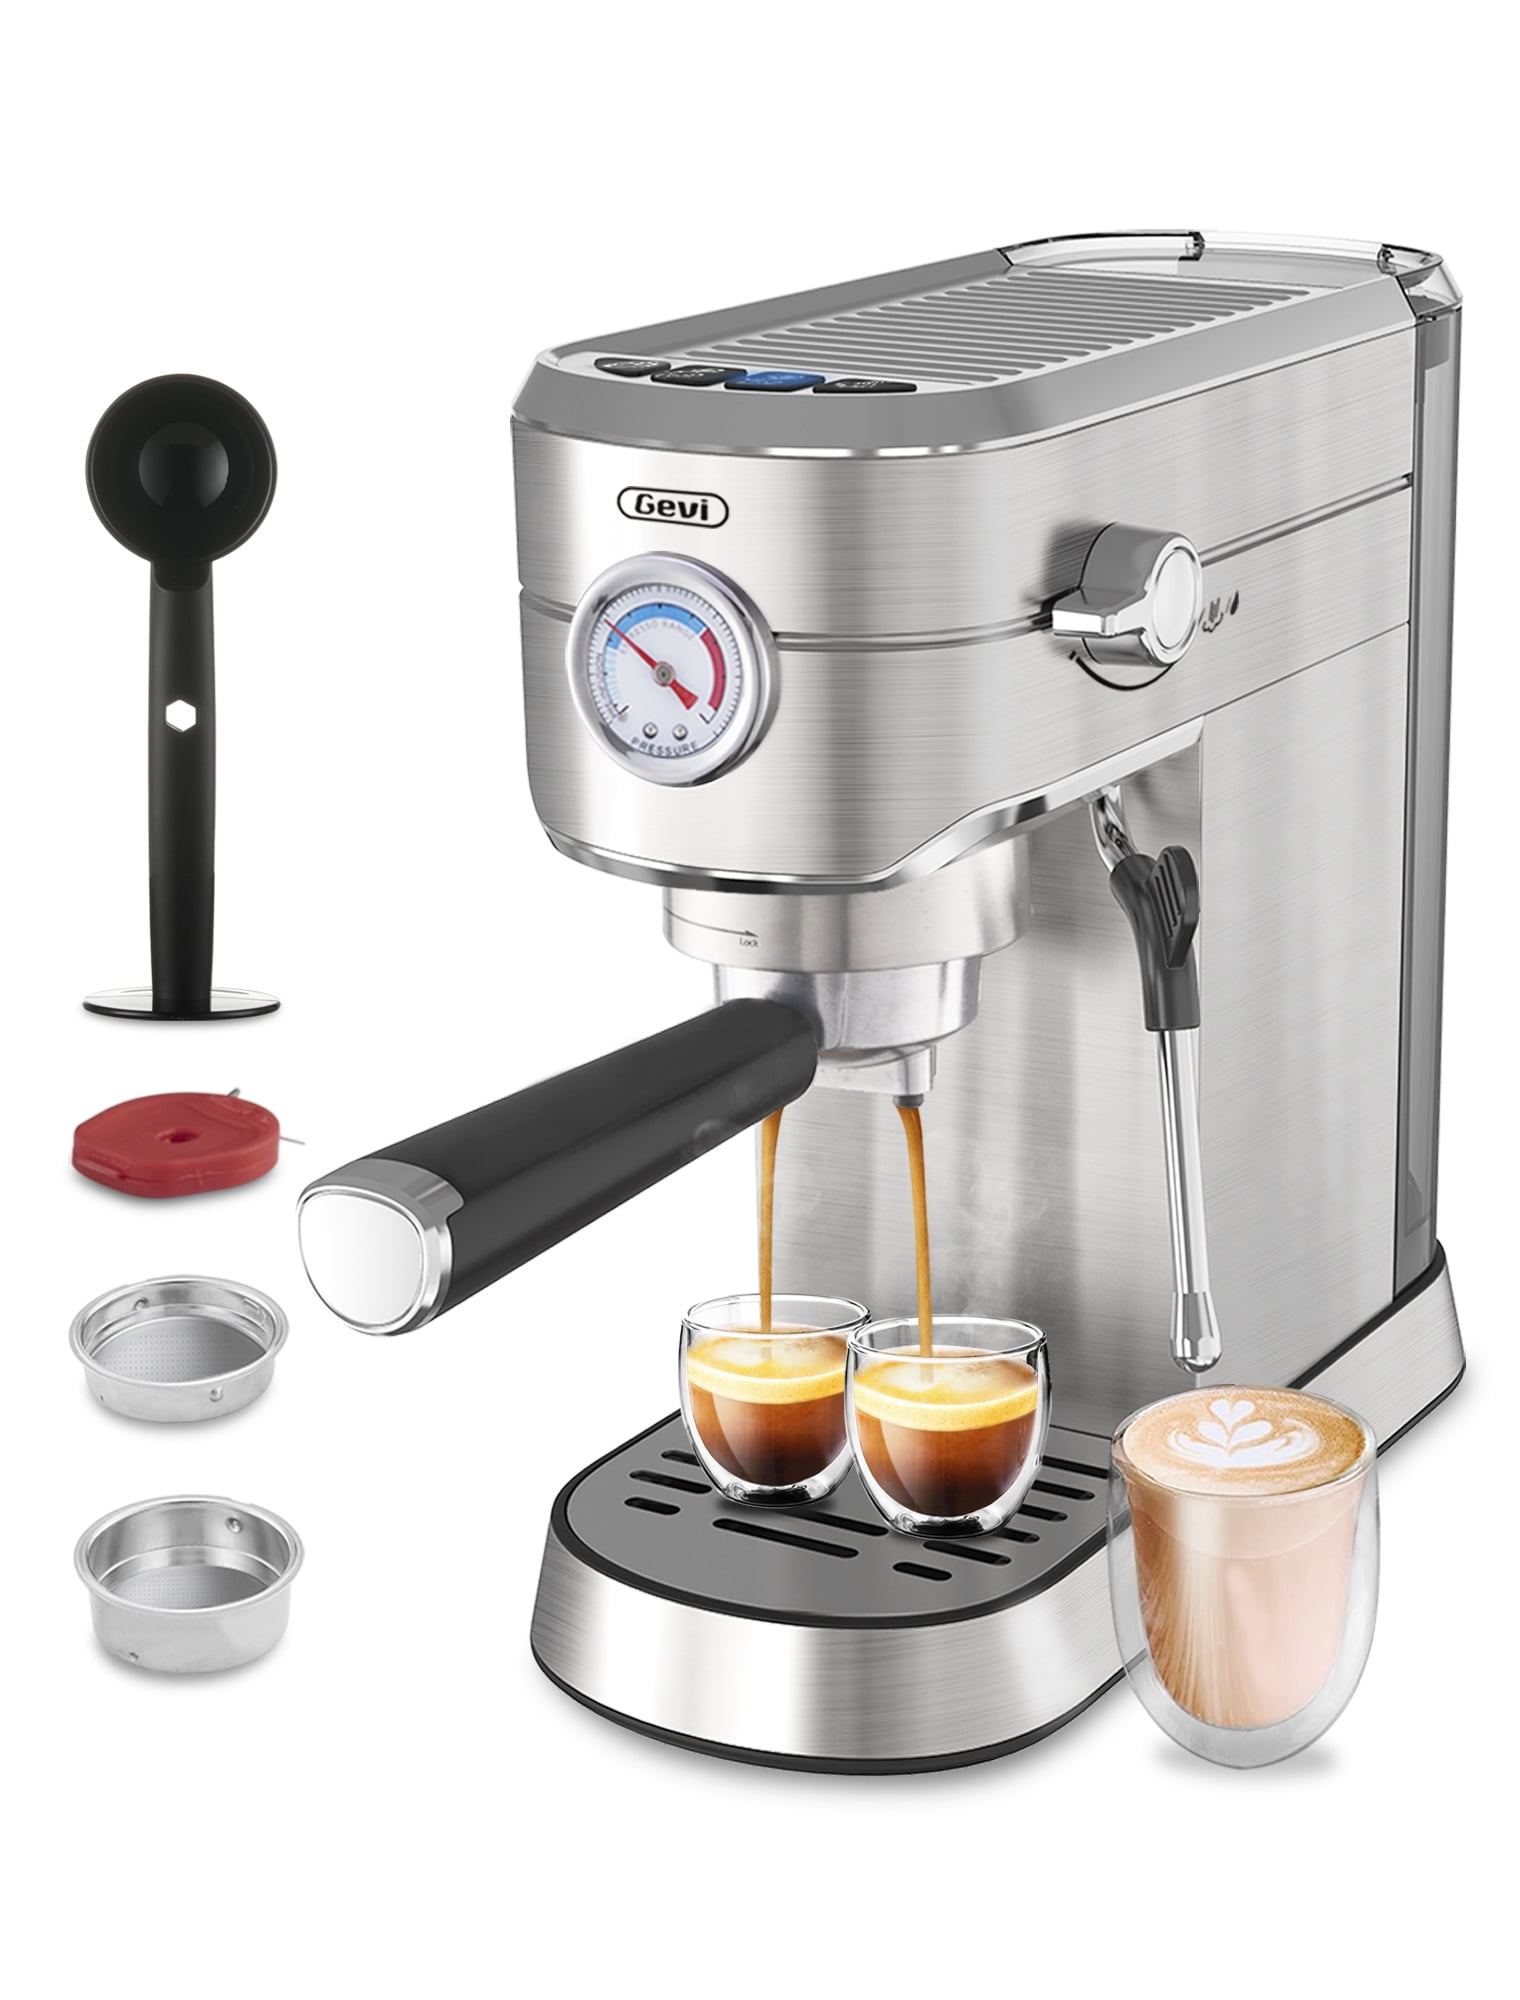 Gevi Espresso Machine Accessories 5 PCS – GEVI